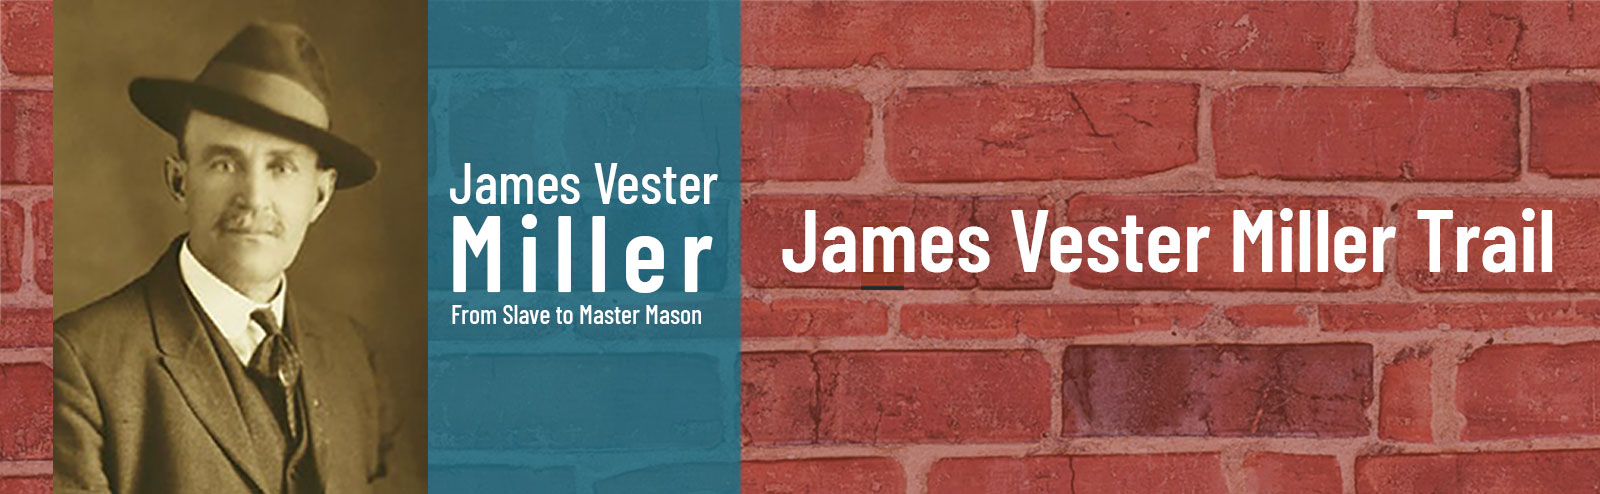 James Vester Miller